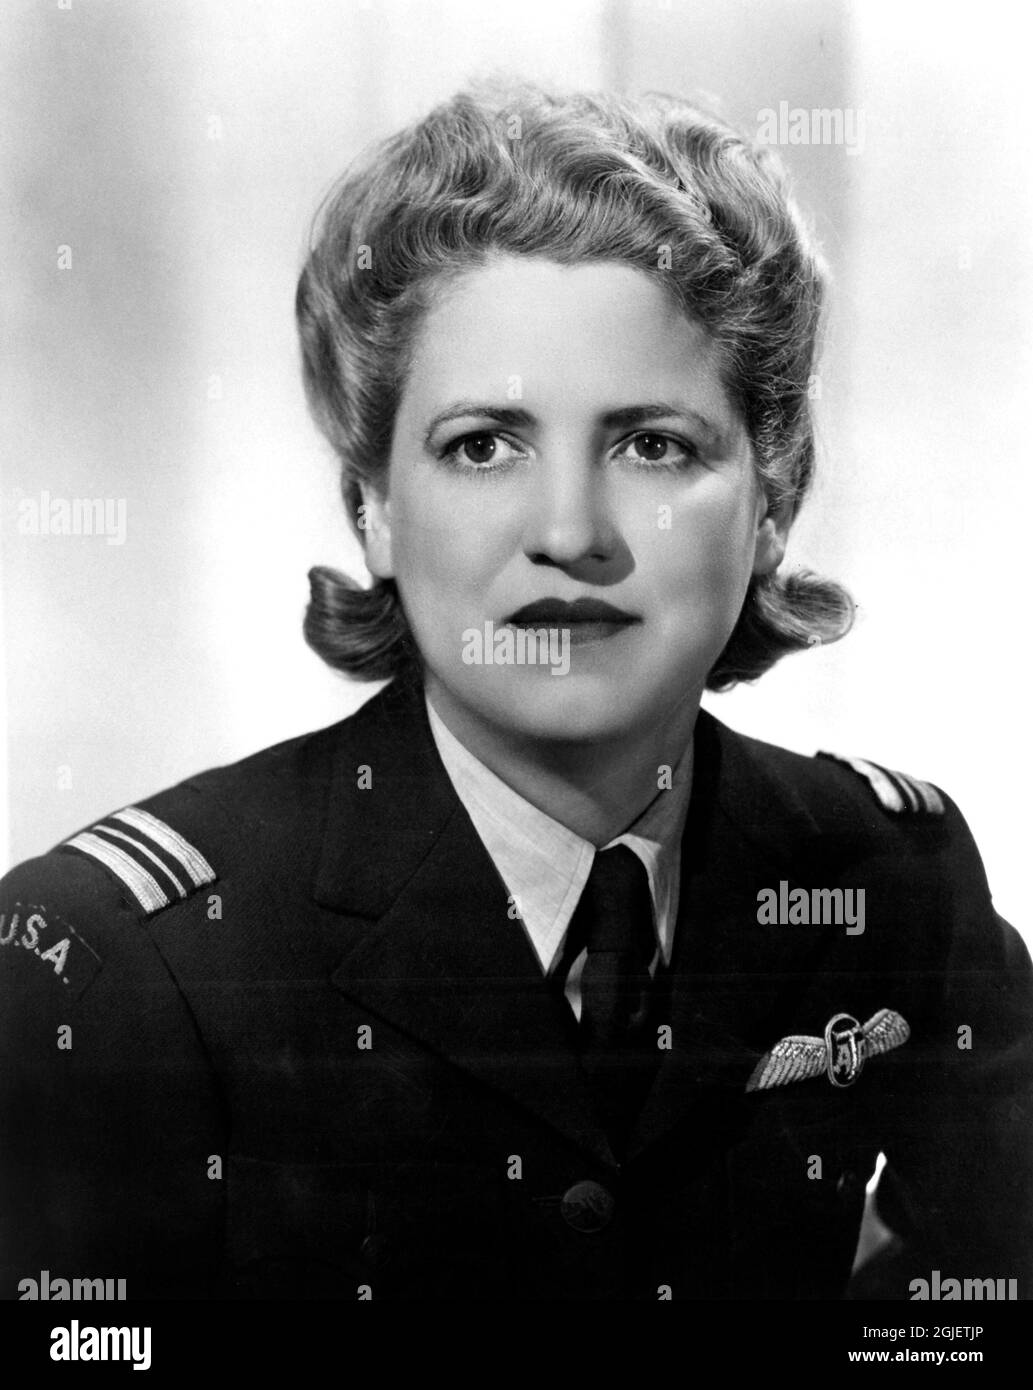 Ritratto del pioniere americano dell'aviazione Jacqueline Cochran (1906-1980) in Air Transport Auxiliary Uniform, 1942. Foto Stock